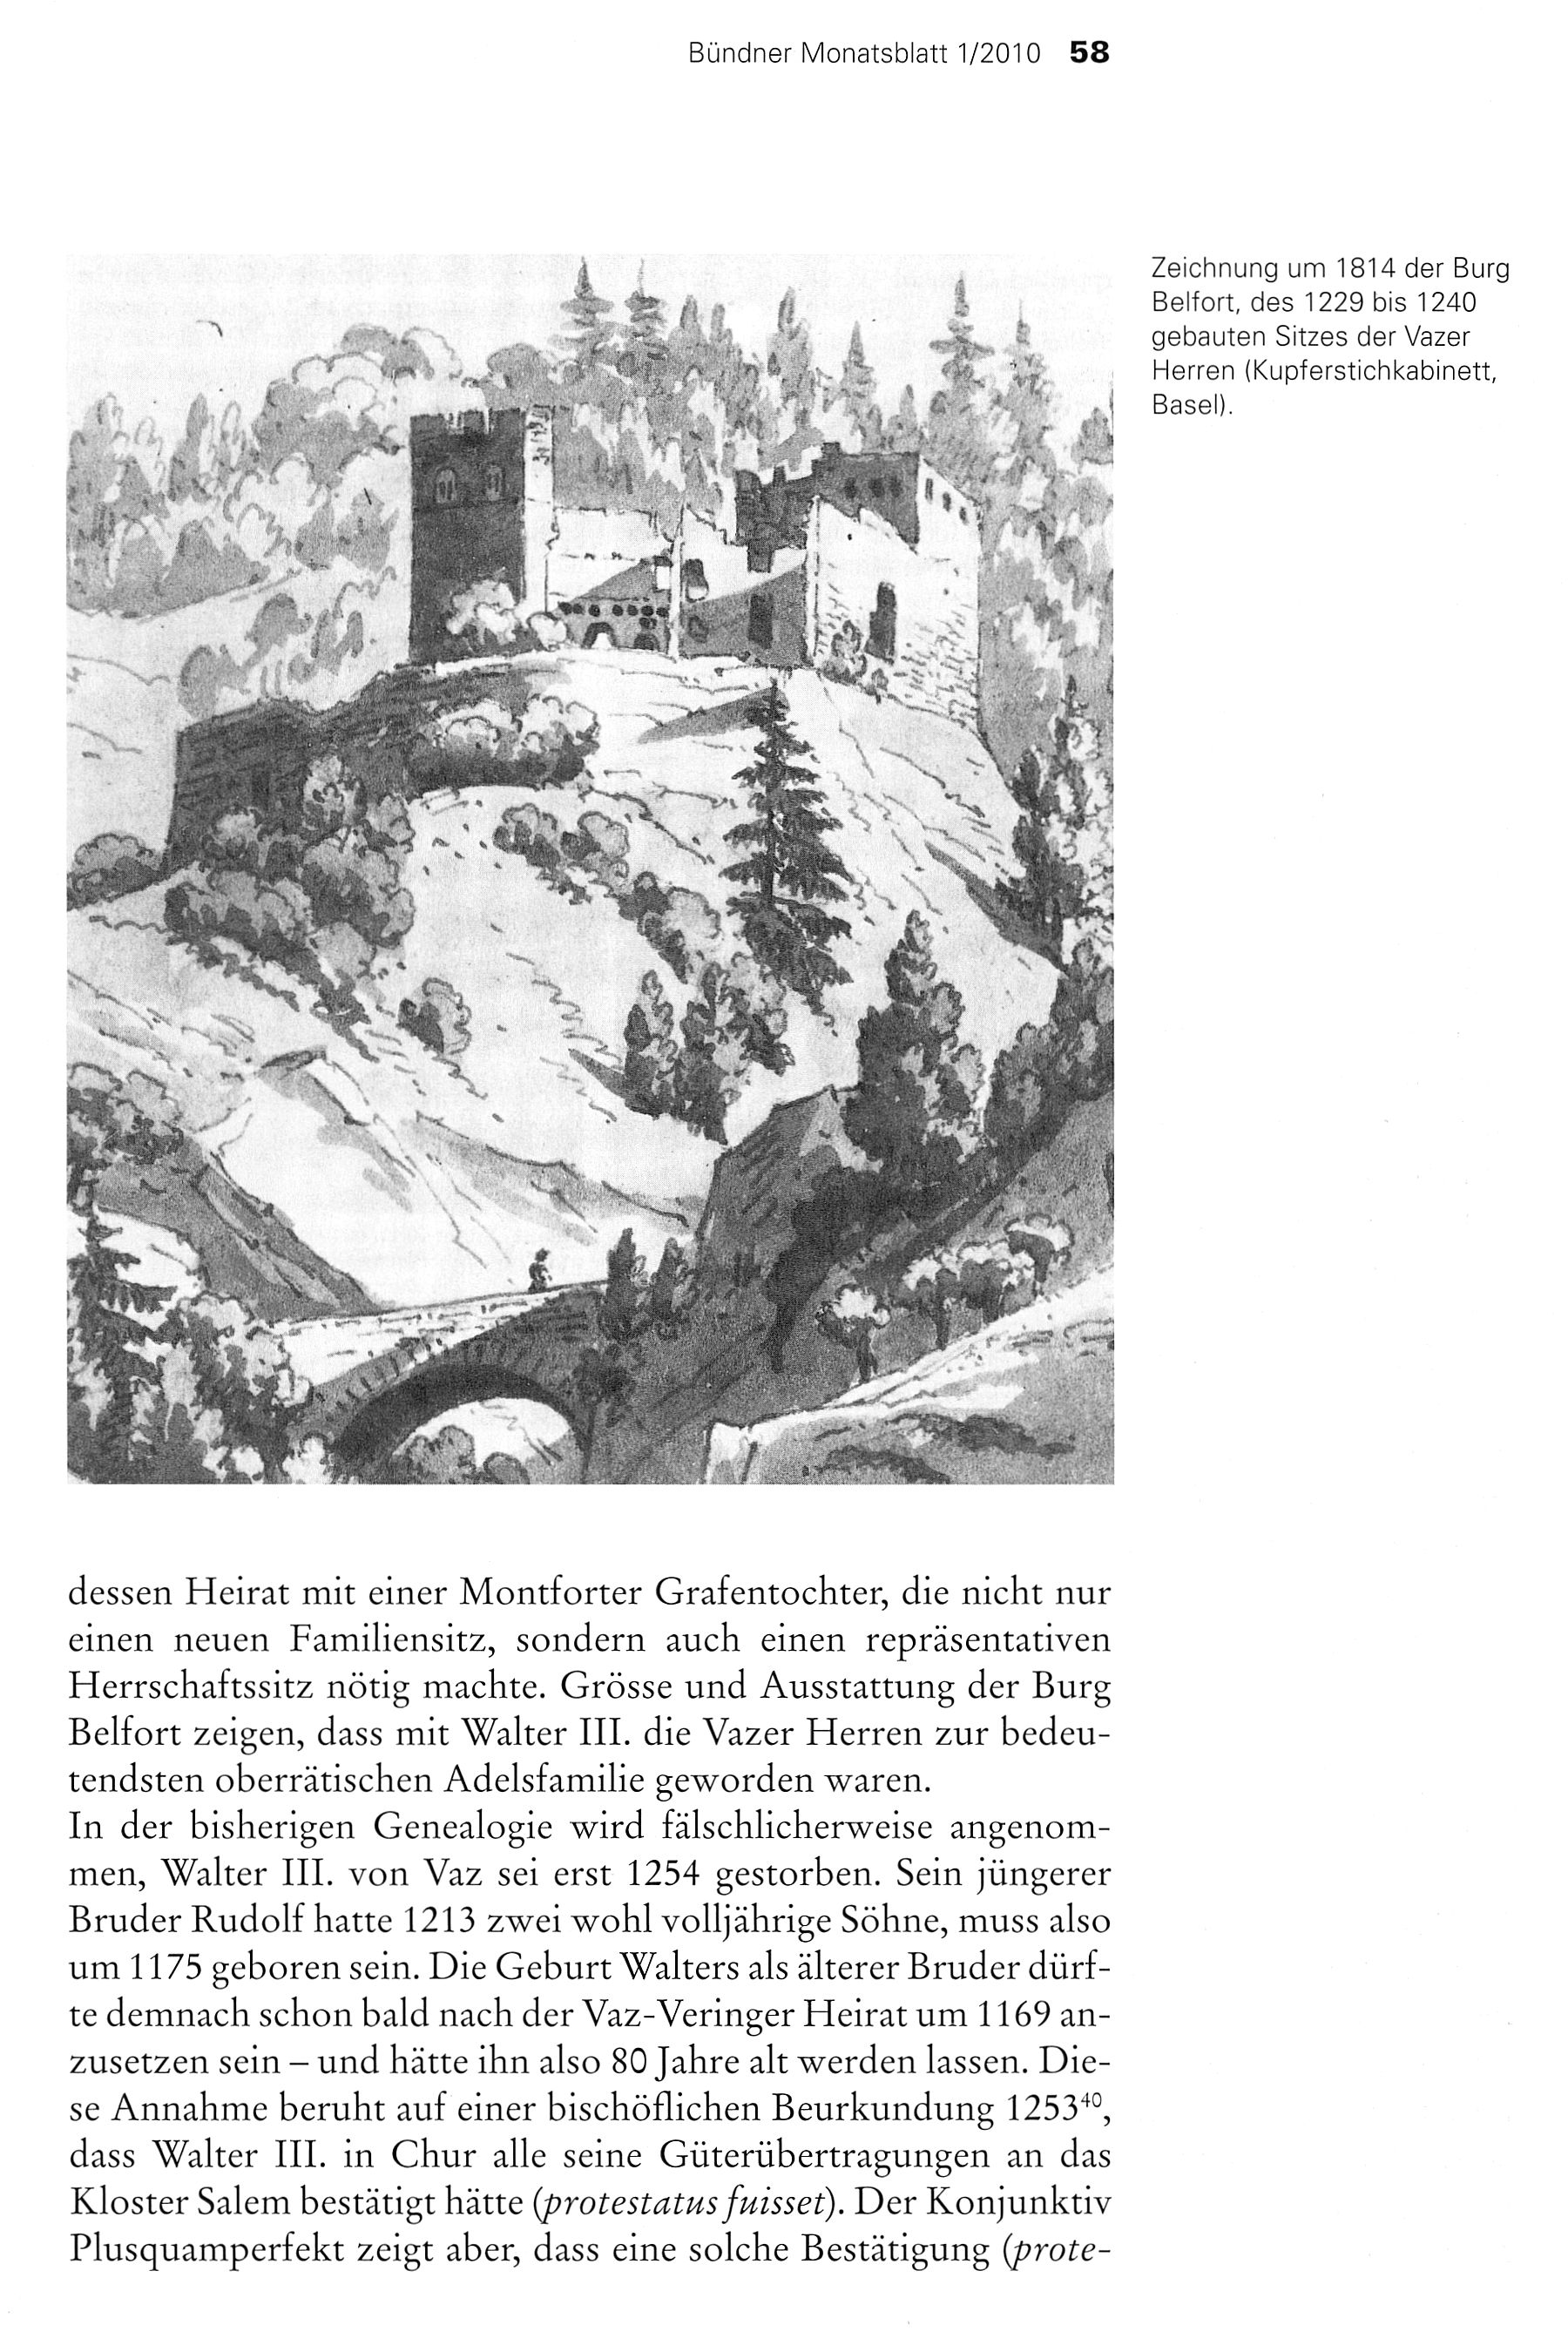 Bündner Monatsblatt 1/2010 58 \ a ' Zeichnung um 1814 der Burg Belfort, des 1229 bis 1240 gebauten Sitzes der Vazer Herren (Kupferstichkabinett, Basel). r. s X I \ s, y 'X -*?y H 'v c- -: -.